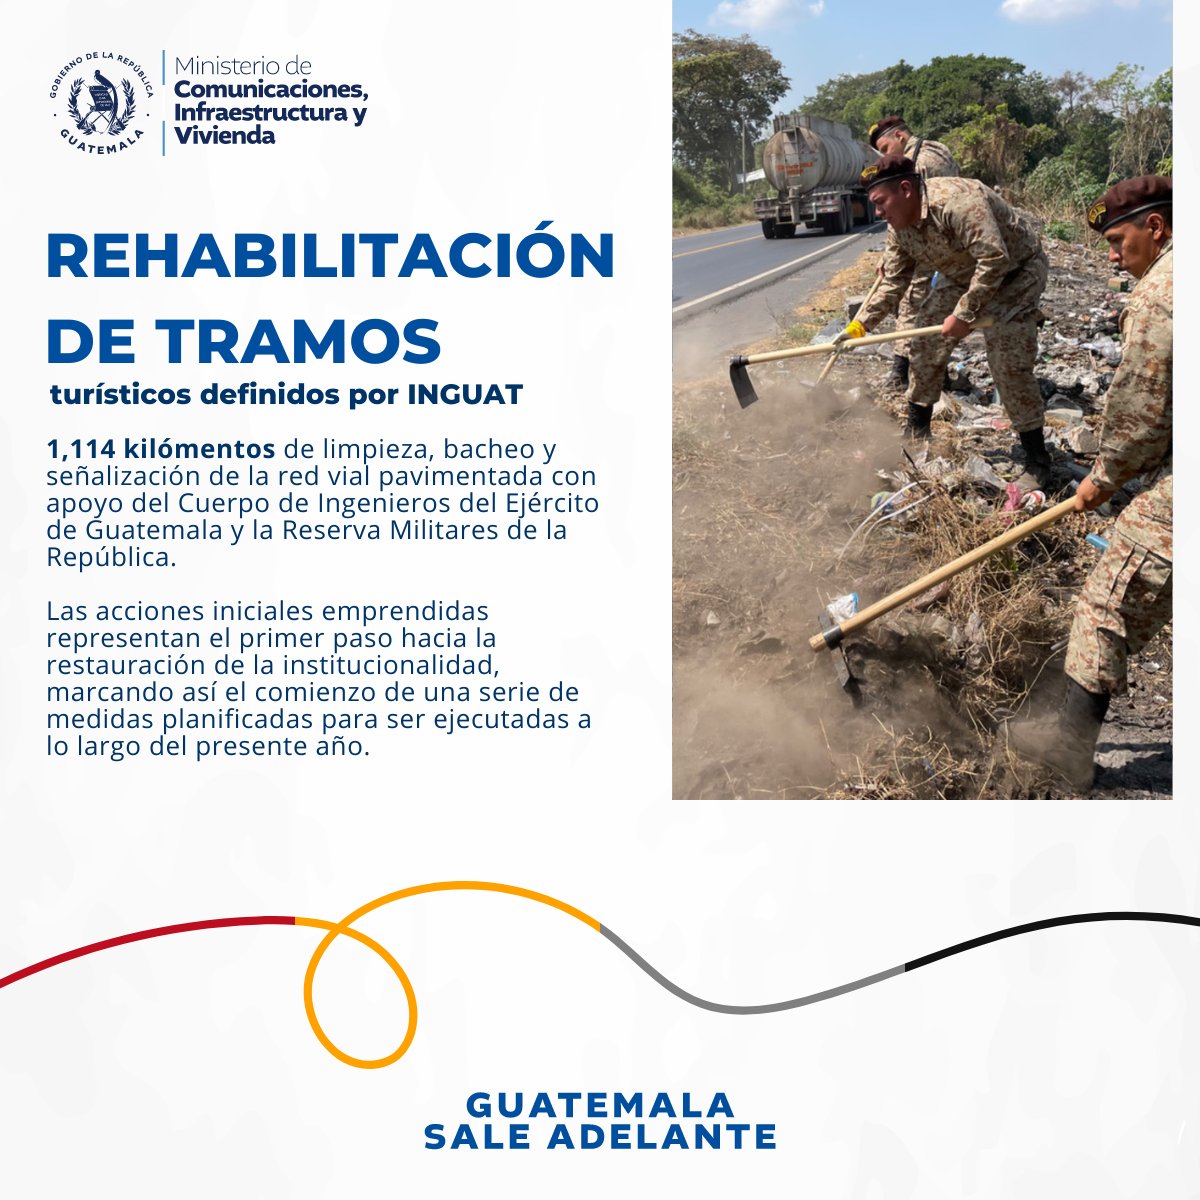 Con el apoyo del Cuerpo de Ingenieros del Ejército y la Reserva Militar, se han rehabilitado 1,114 km de rutas turísticas señaladas por INGUAT con limpieza, bacheo y señalización. 100dias.gob.gt #GuatemalaSaleAdelante #MICIVI